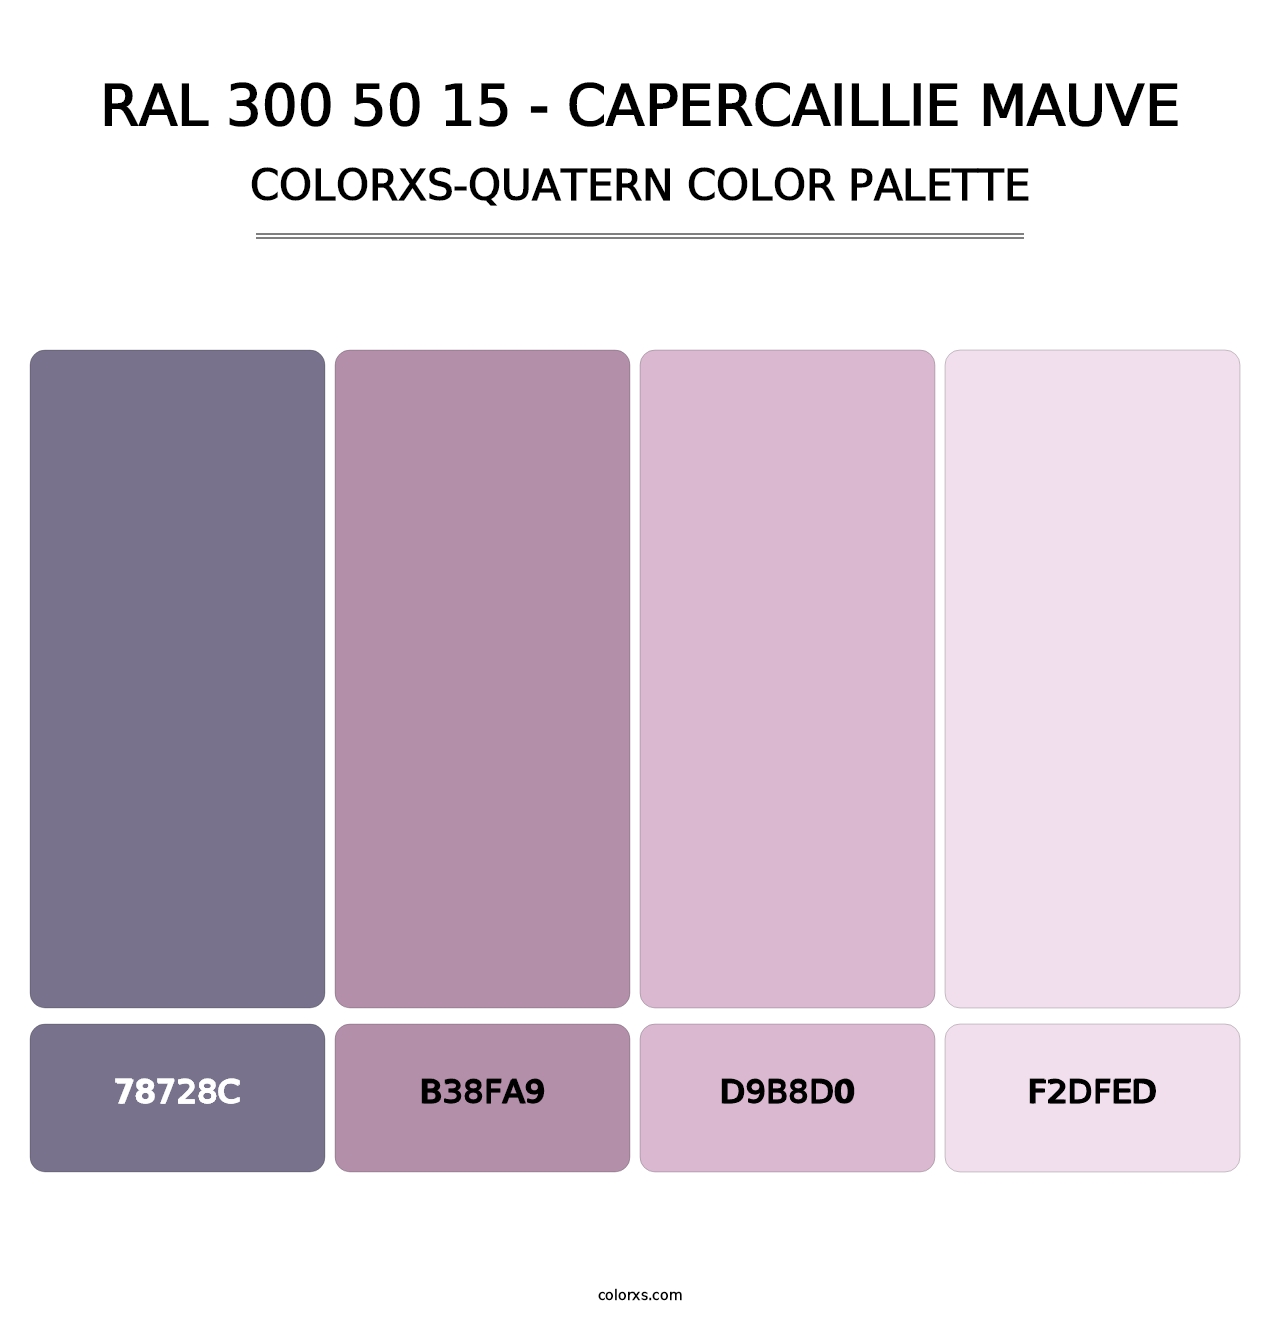 RAL 300 50 15 - Capercaillie Mauve - Colorxs Quatern Palette